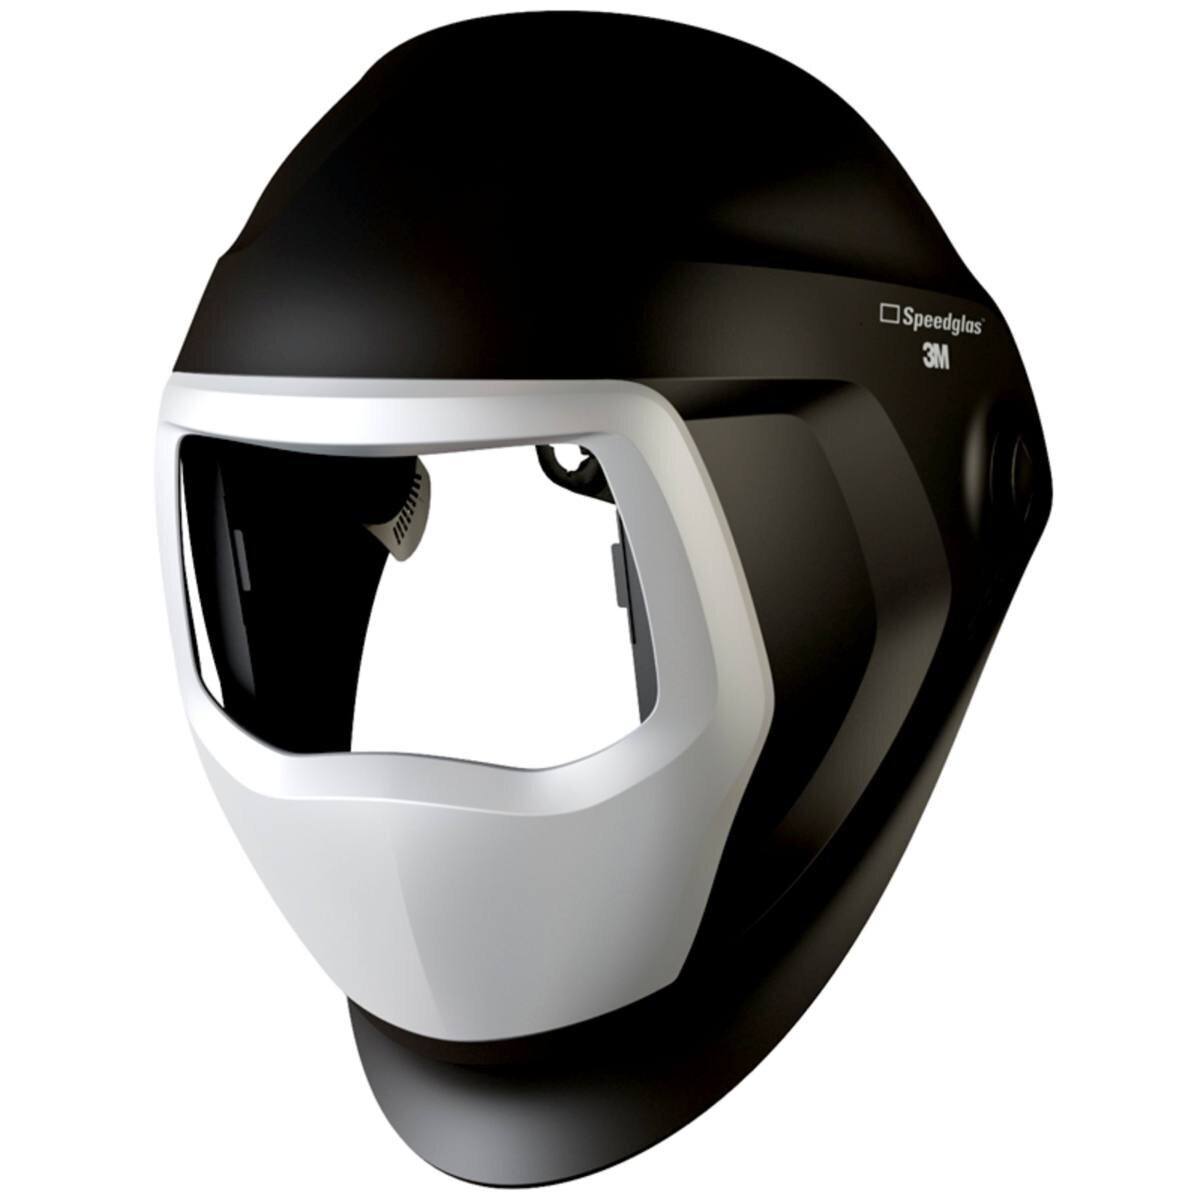 3M Speedglas Lasmasker 9100 zonder zijruit, met hoofdband, zonder ADF automatisch lasfilter #501100